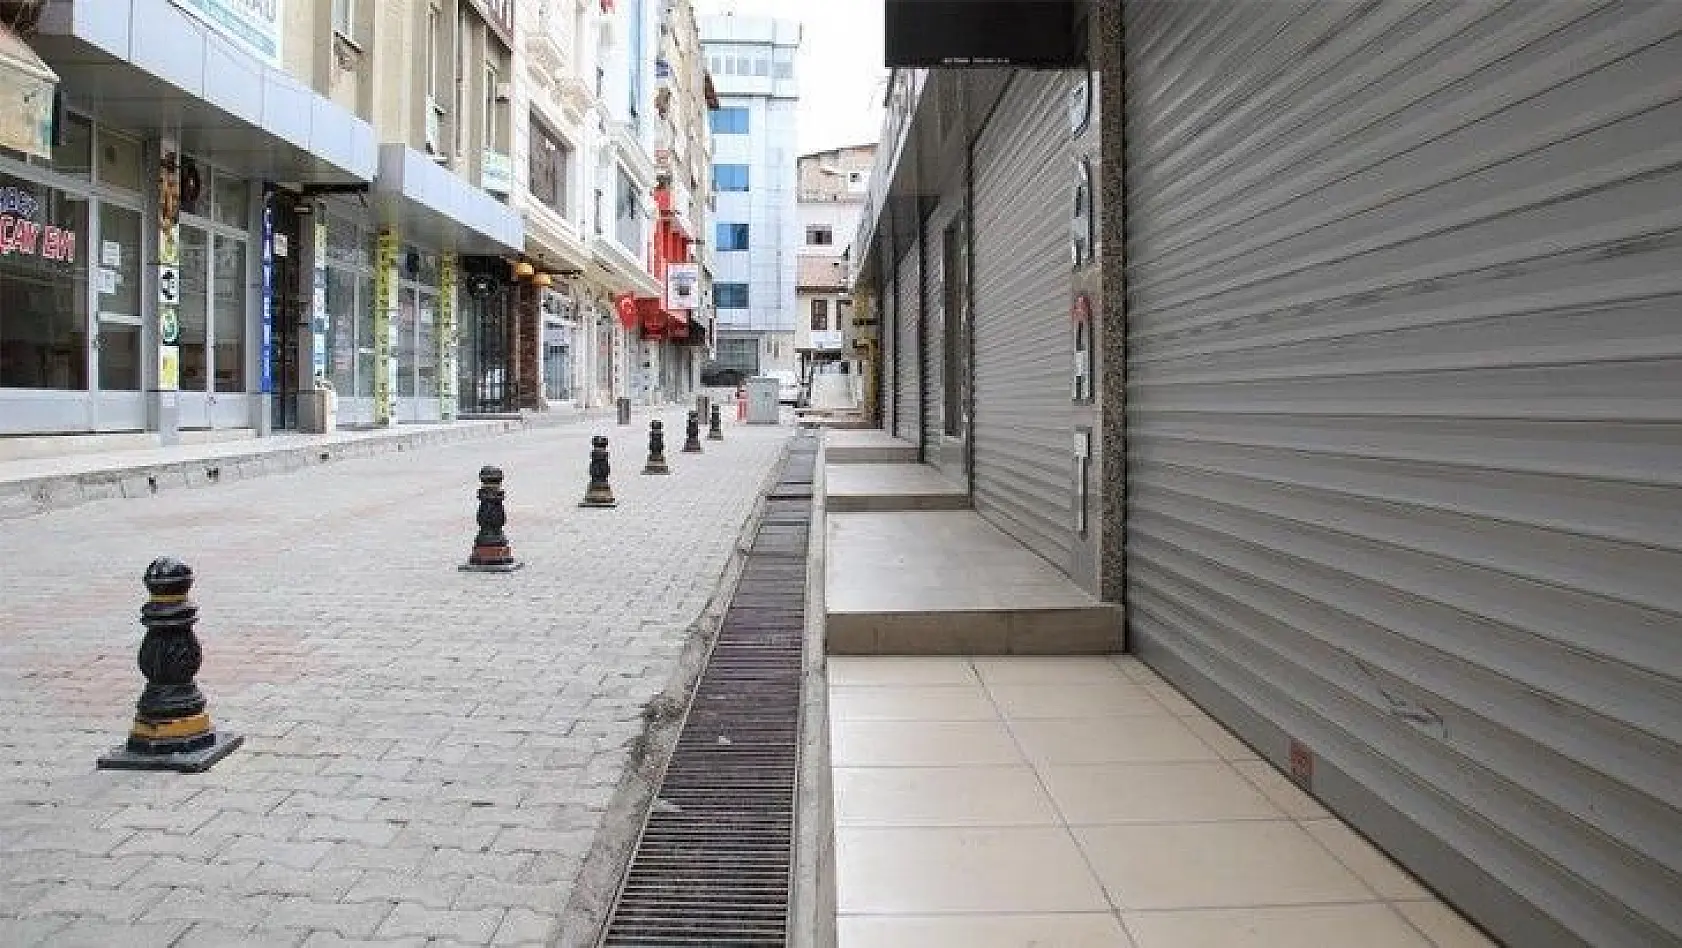 Elazığ'da cadde ve sokaklarda kısıtlama sessizliği